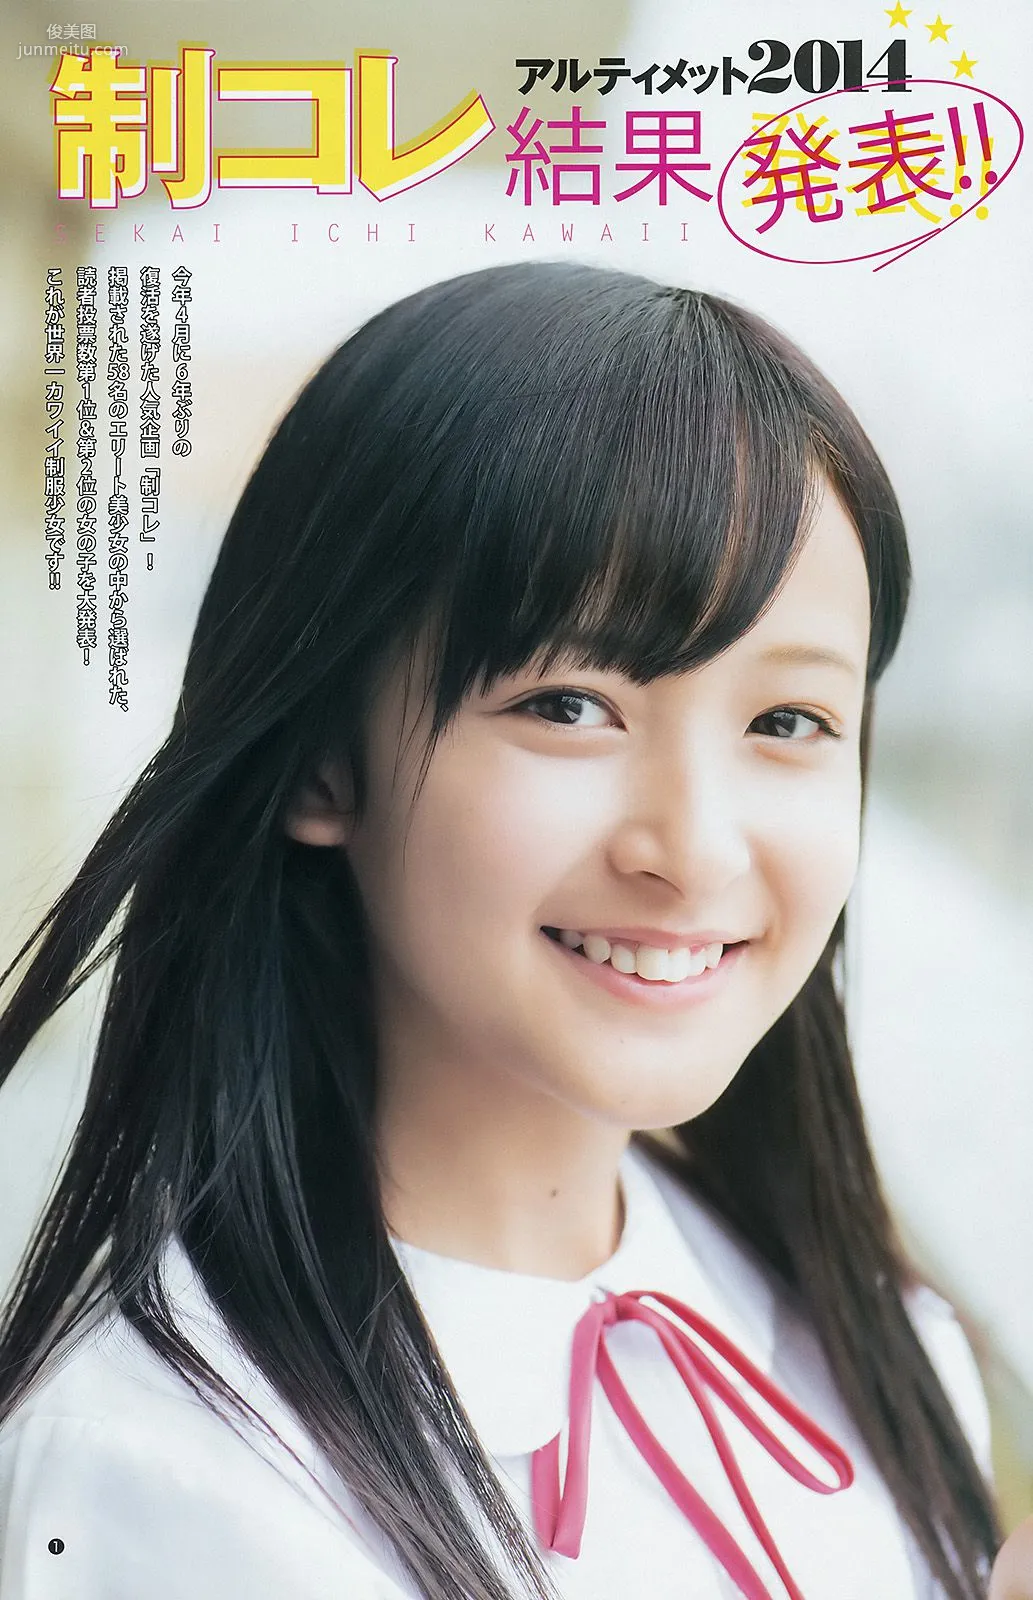 ギャルコン2014 制コレ アルティメット2014 大阪DAIZY7 [Weekly Young Jump] 2014年No.42 写真杂志10